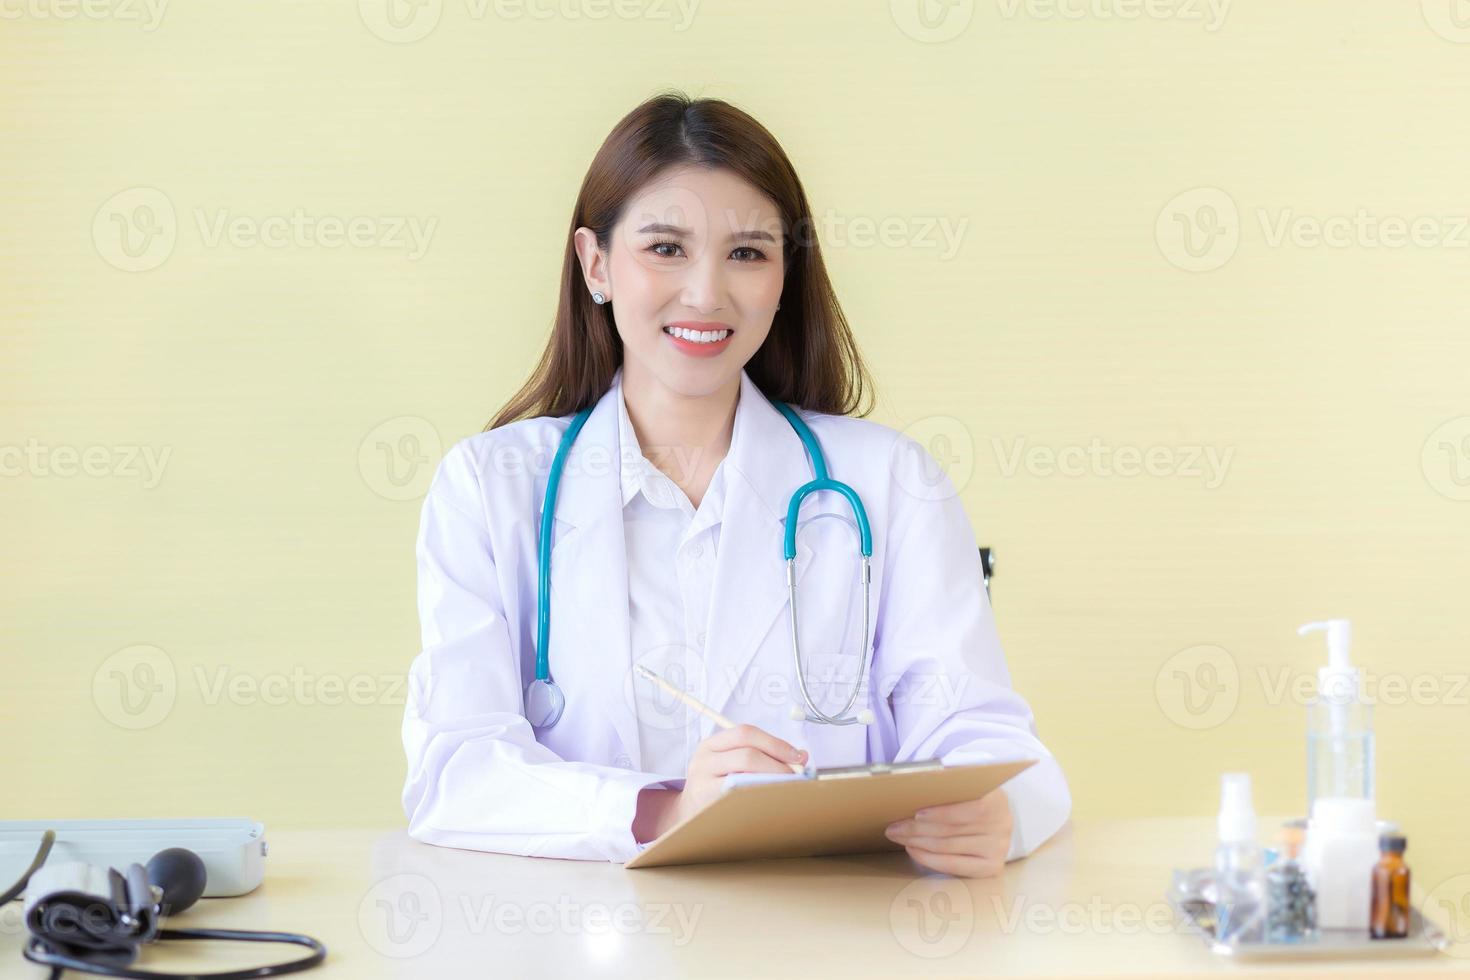 belle femme médecin asiatique assise sourire à l'hôpital portant une robe blanche et un stéthoscope photo